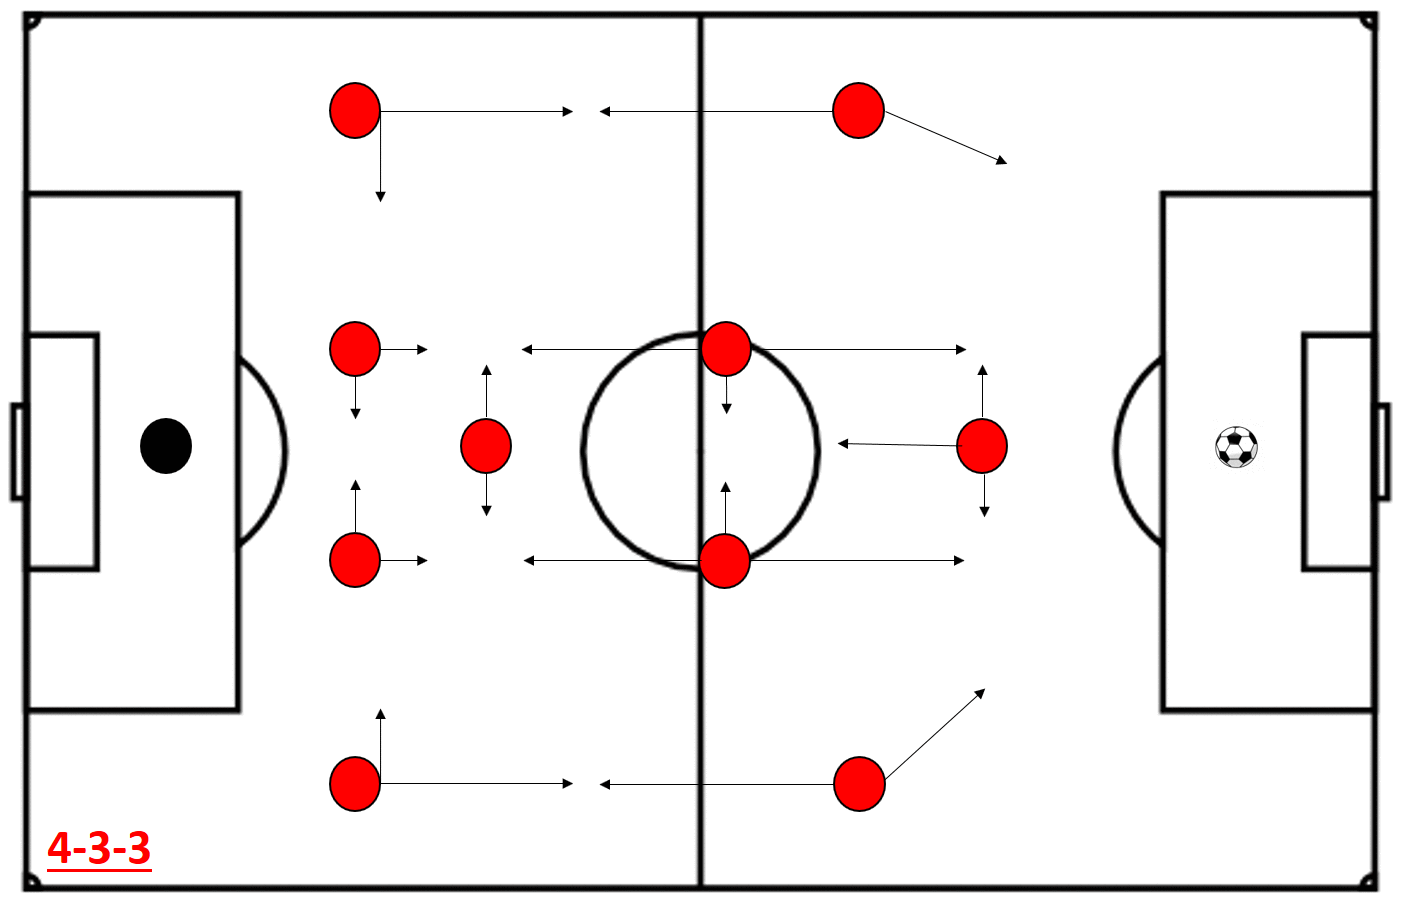 De structuur van Manchester United in een middelhoog blok vanuit 4-3-3 of 4-2-3-1.